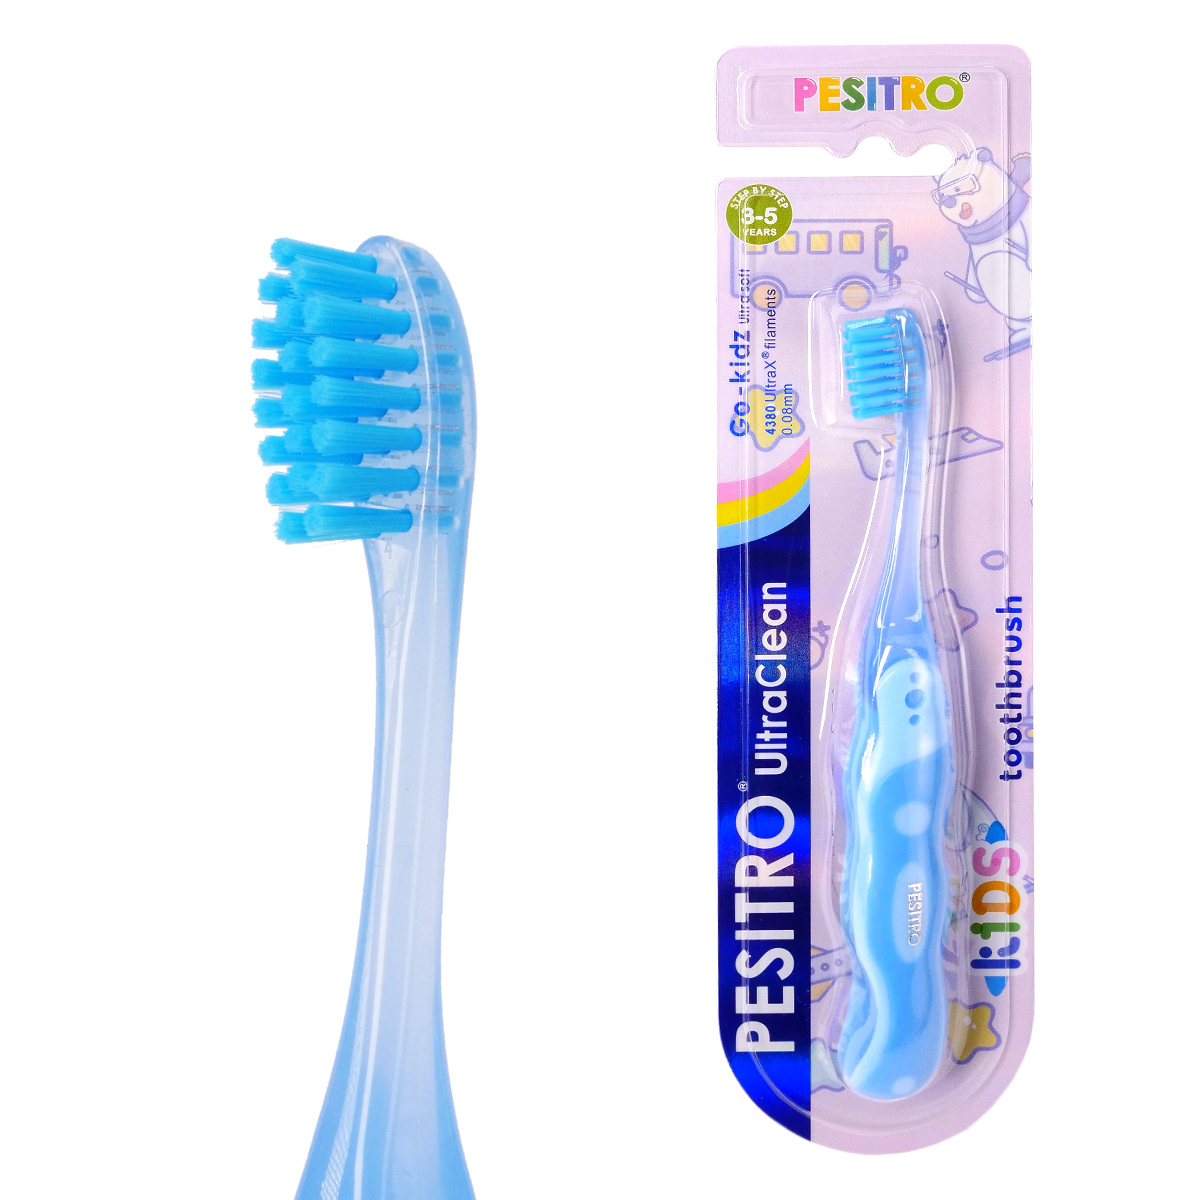 

Зубная щетка Pesitro Ultra Soft 4380 Go-Kidz (от 3 до 5 лет)